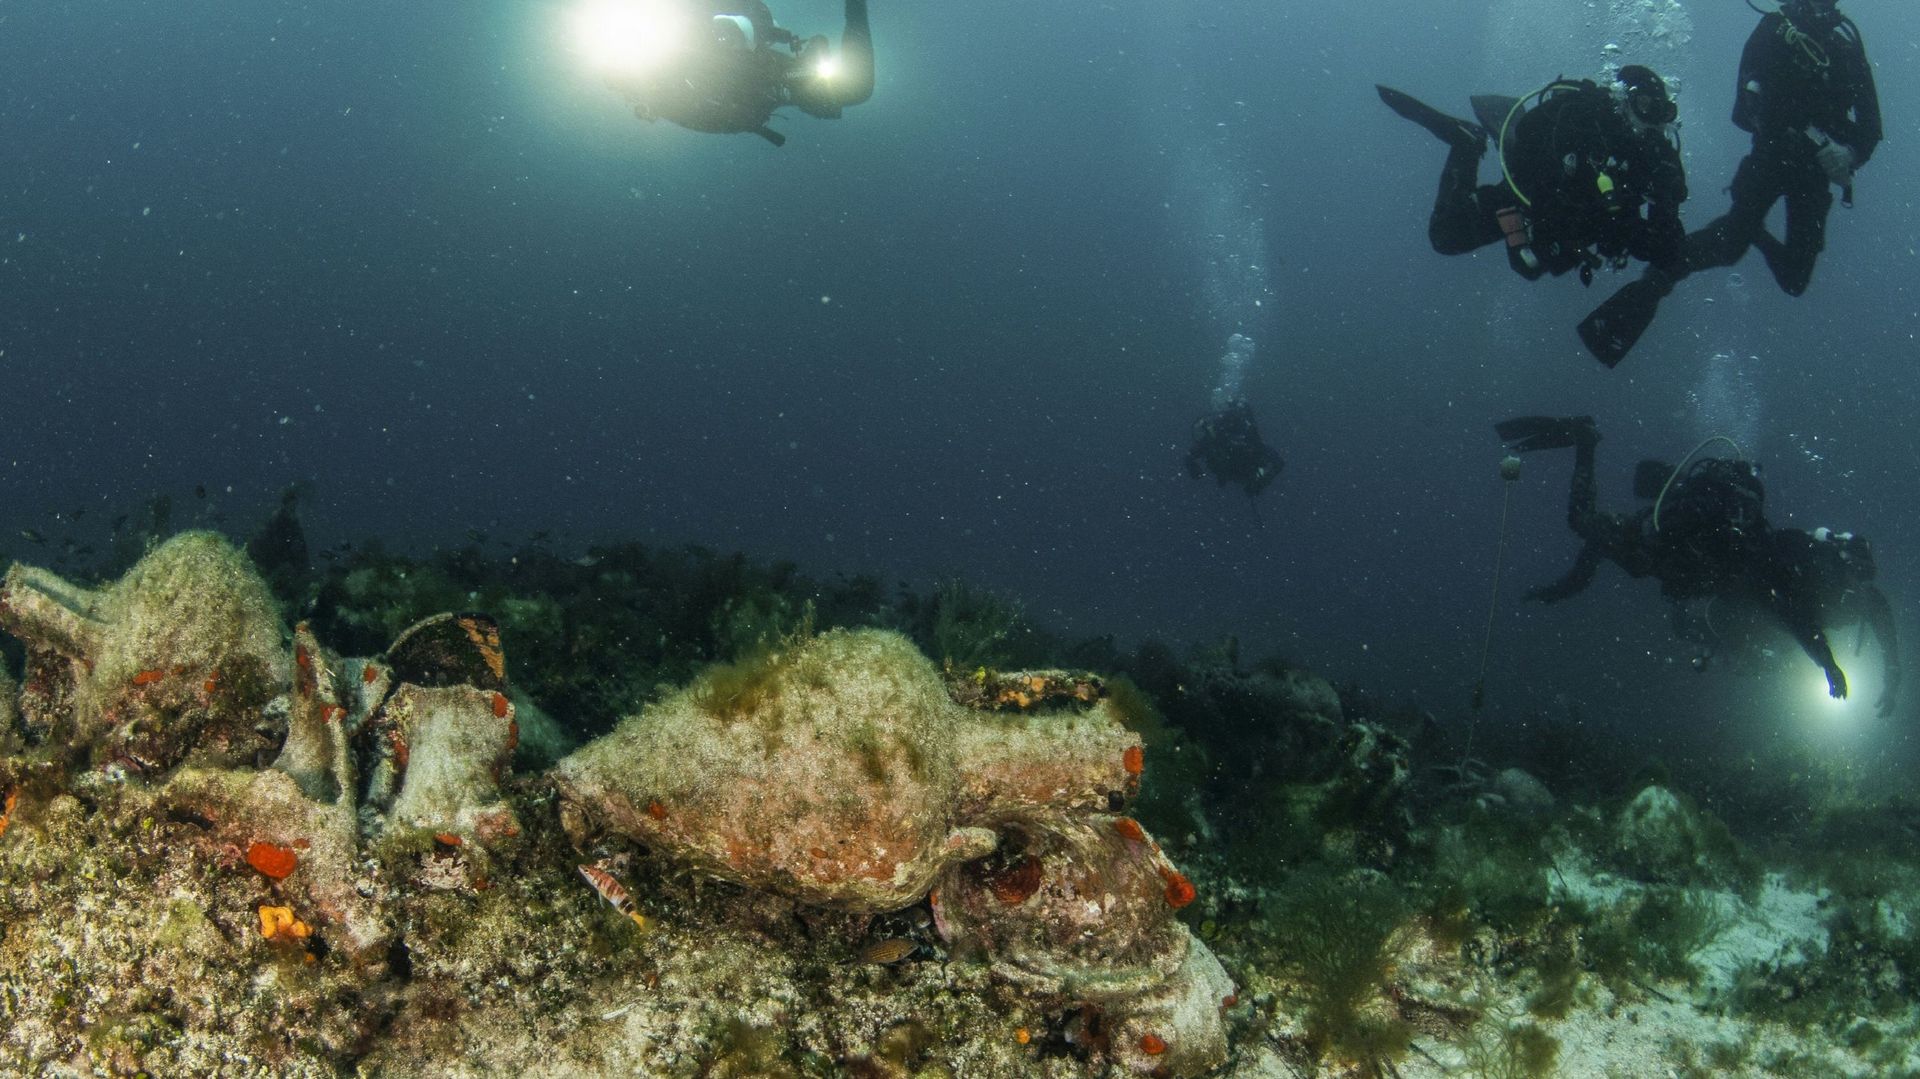 Des plongeurs explorent les ruines d'un navire qui a coulé au Ve siècle av. JC sur l'île égéenne d'Alonissos, en Grèce